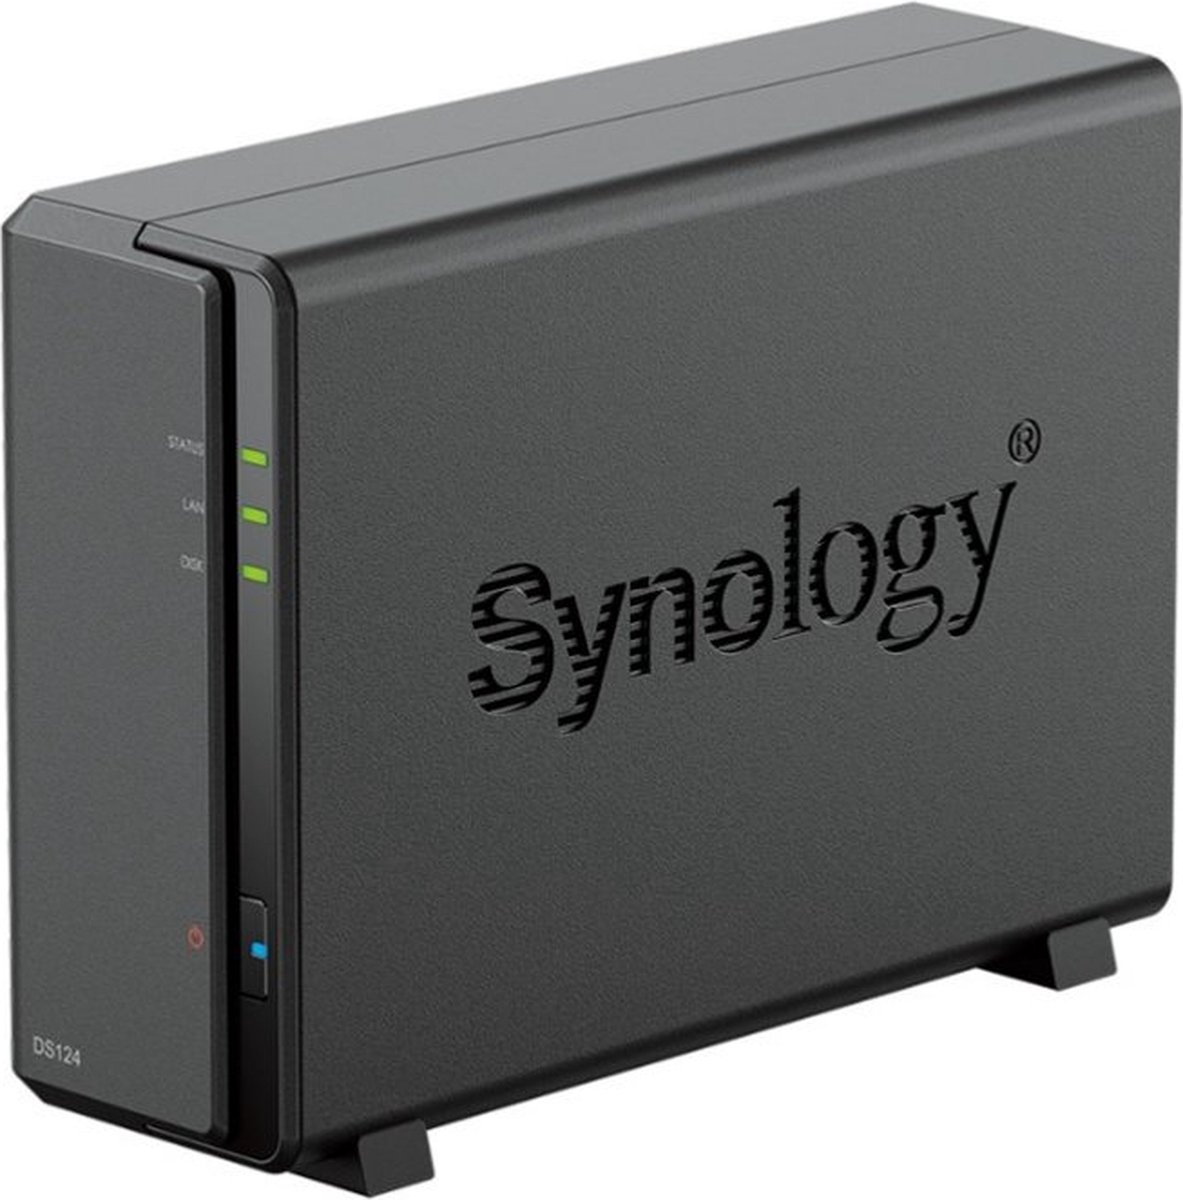 Synology DiskStation DS124 data-opslag-server NAS Desktop Ethernet LAN Zwart RTD1619B - Synology